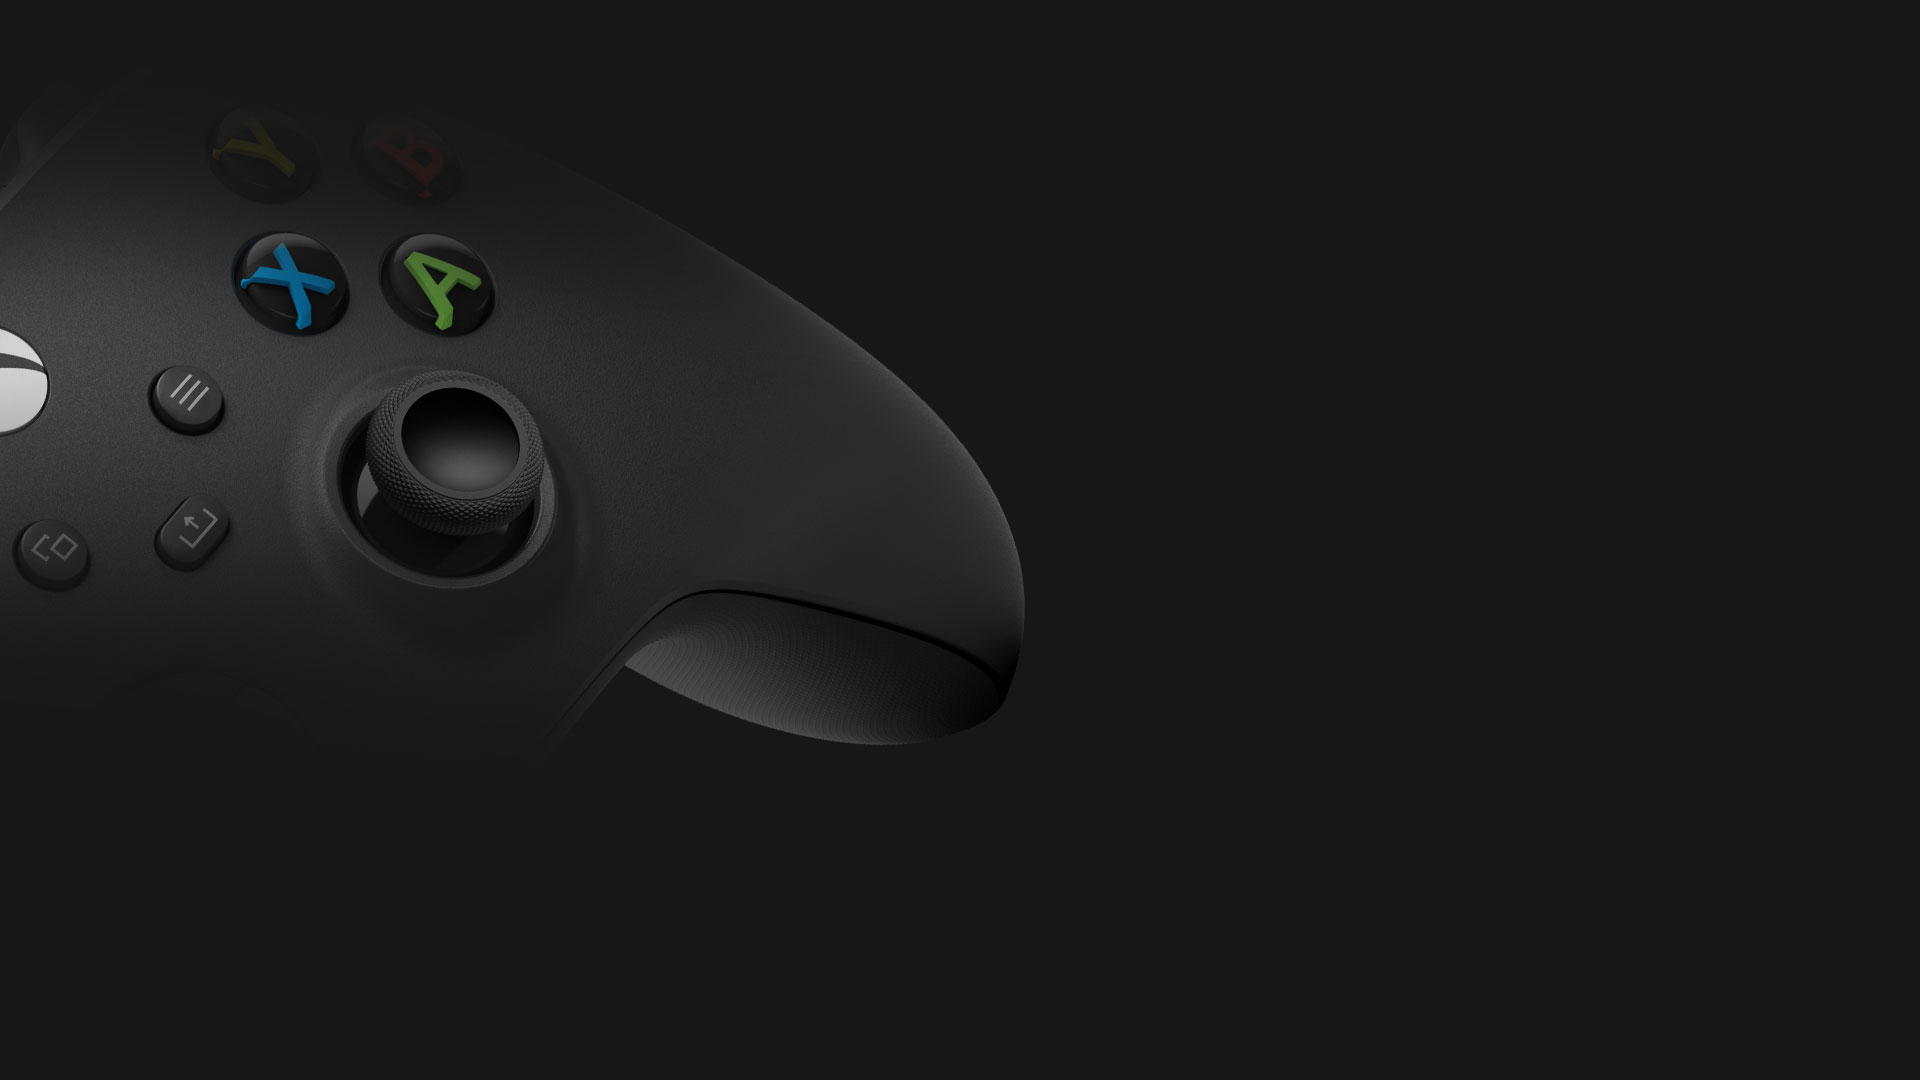 A szénfekete vezeték nélküli Xbox-kontroller oldalsó döntött képe